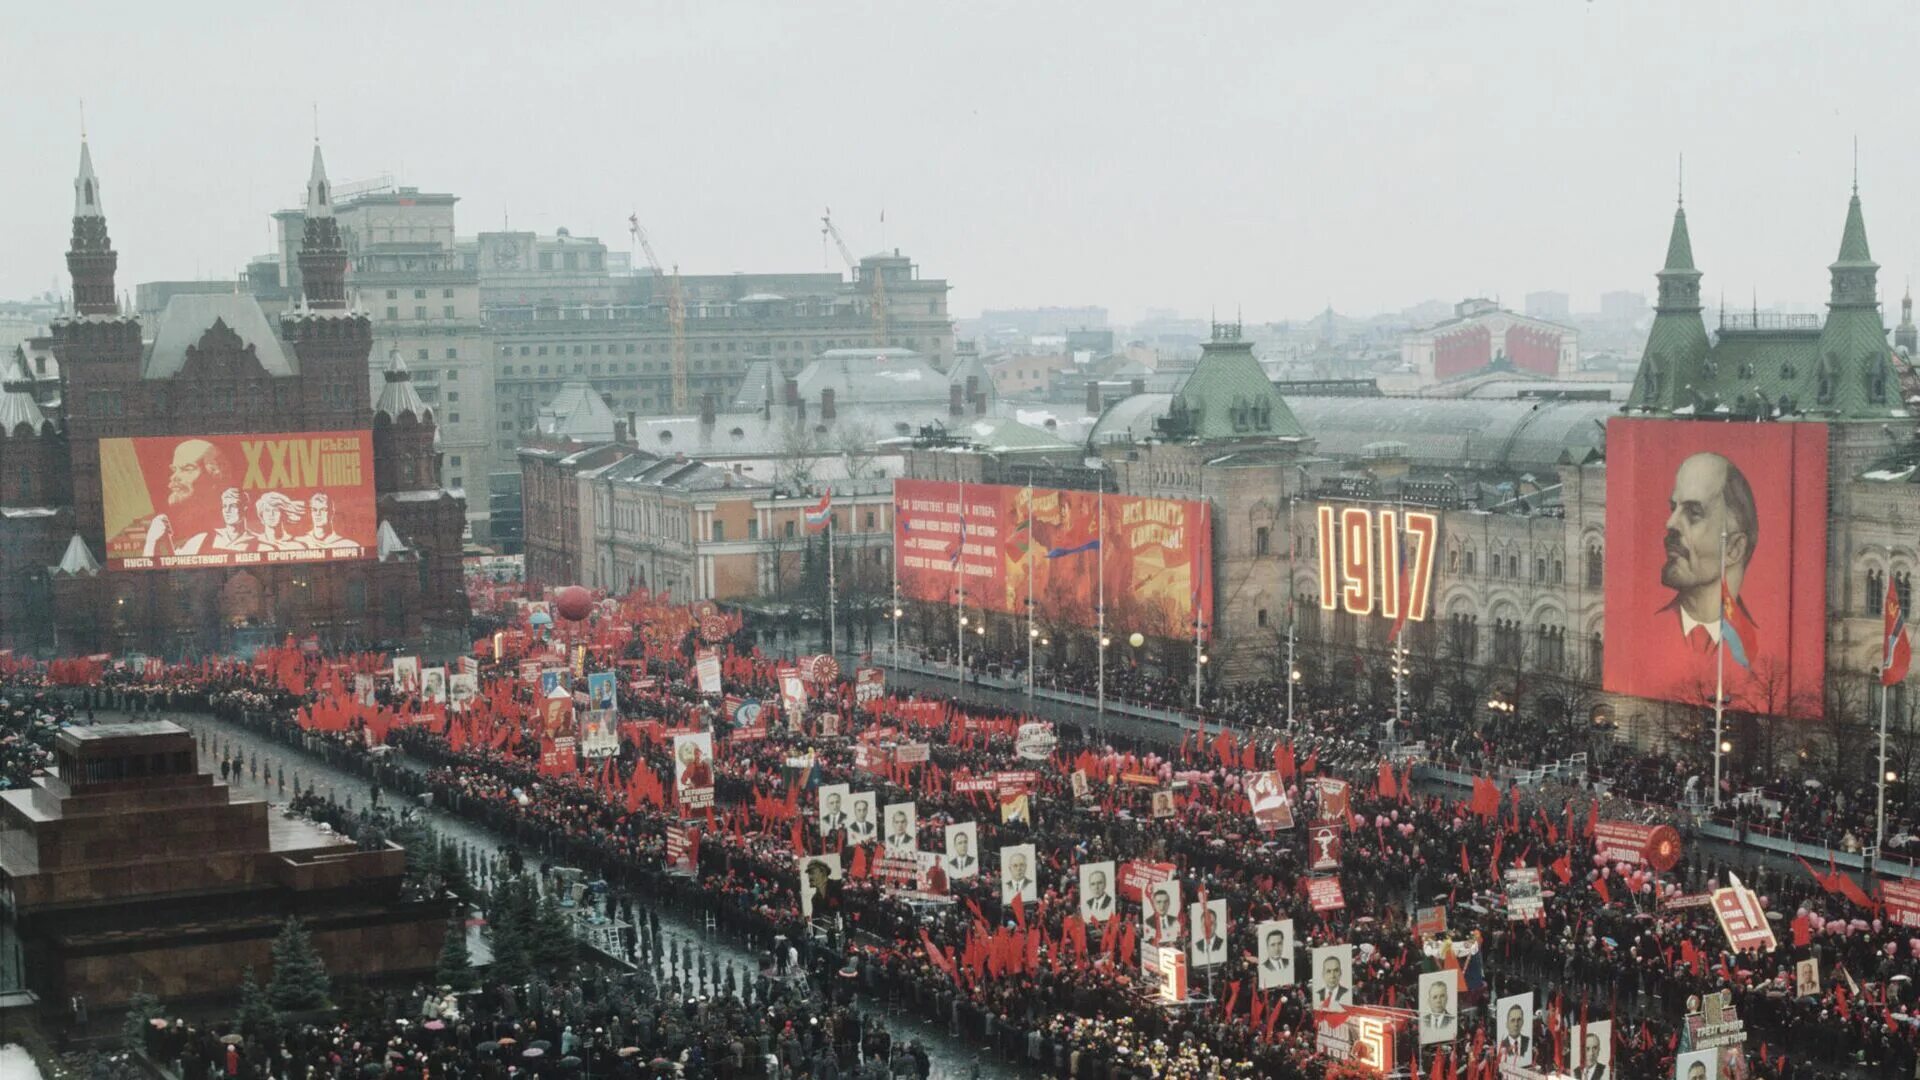 7 ноября какой события. Парад Октябрьской революции СССР. Демонстрация 7 ноября на красной площади. Празднование Октябрьской революции в СССР. Демонстрация 7 ноября в СССР.